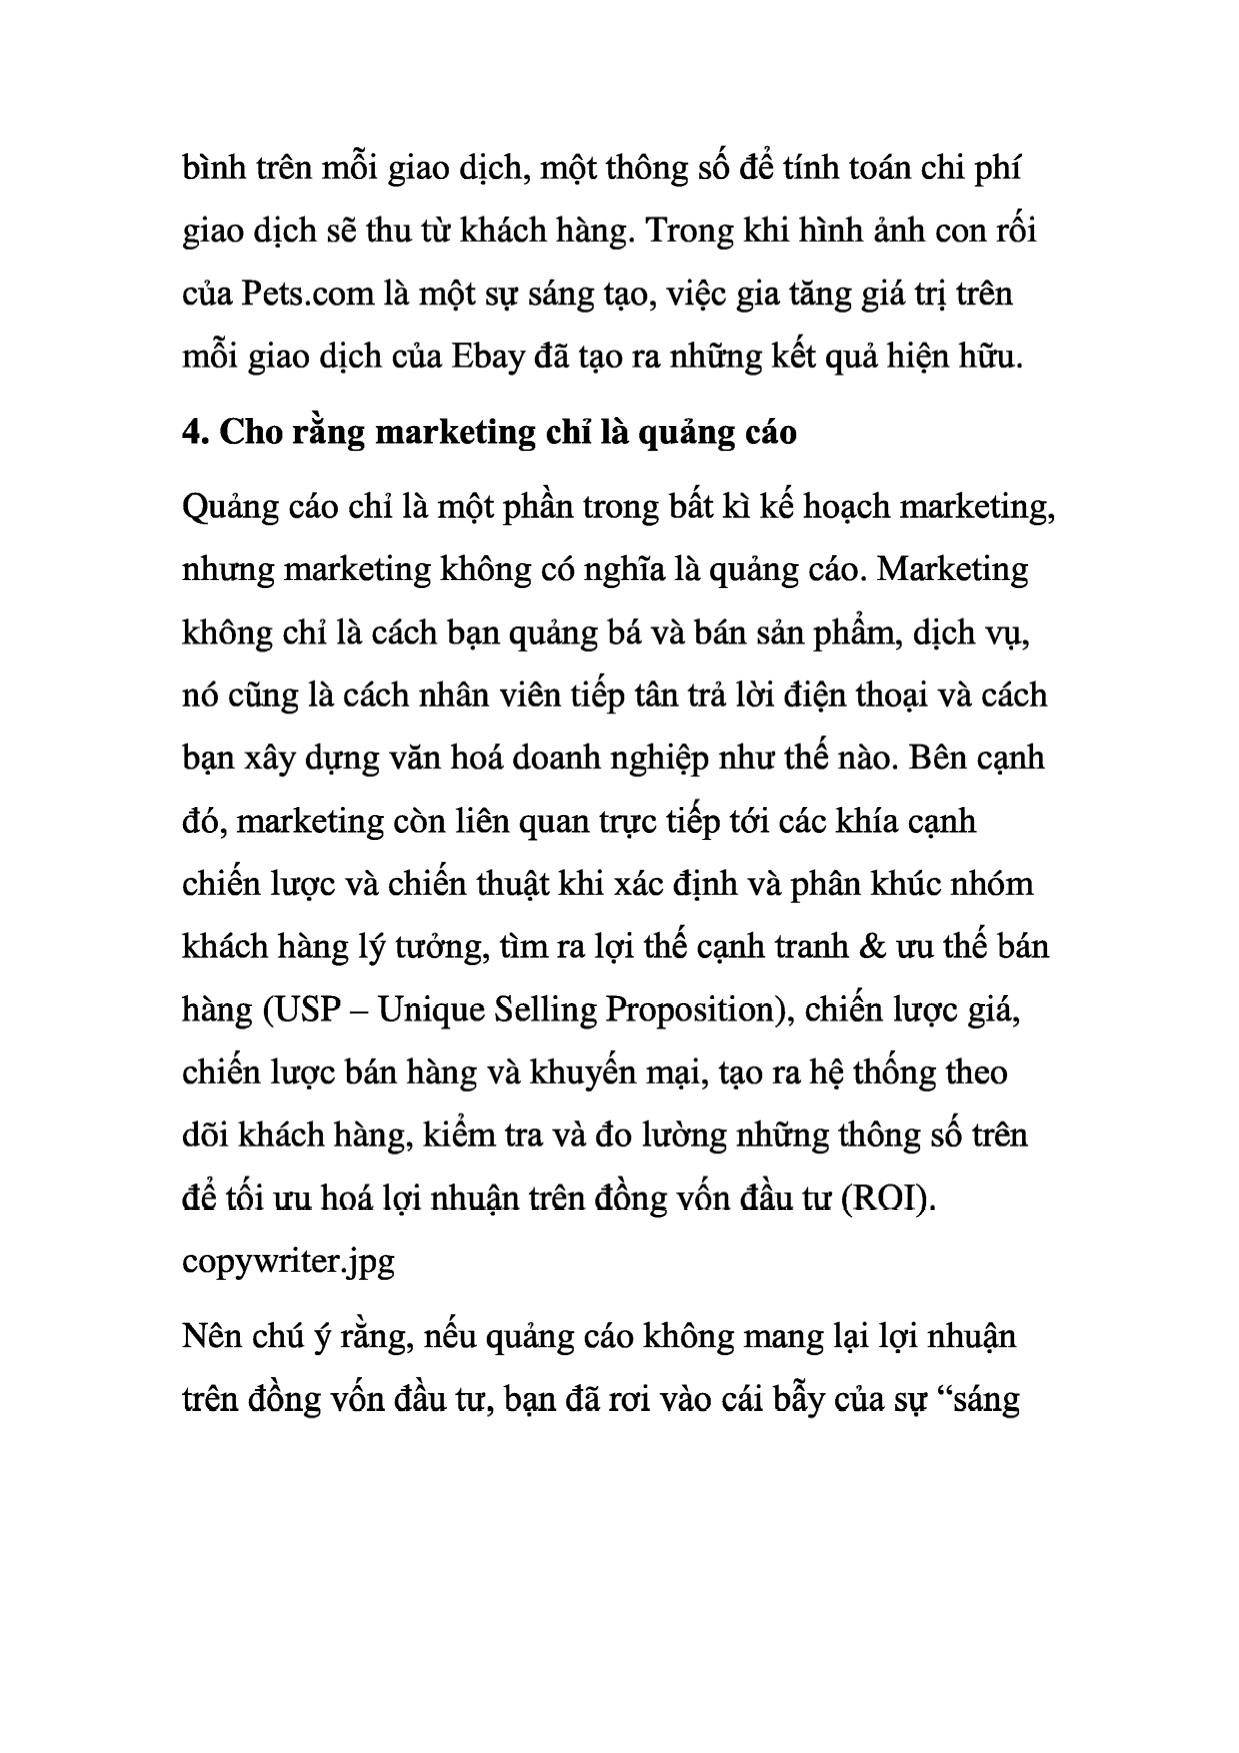 5 cách “giết chết” kế hoạch marketing trang 5